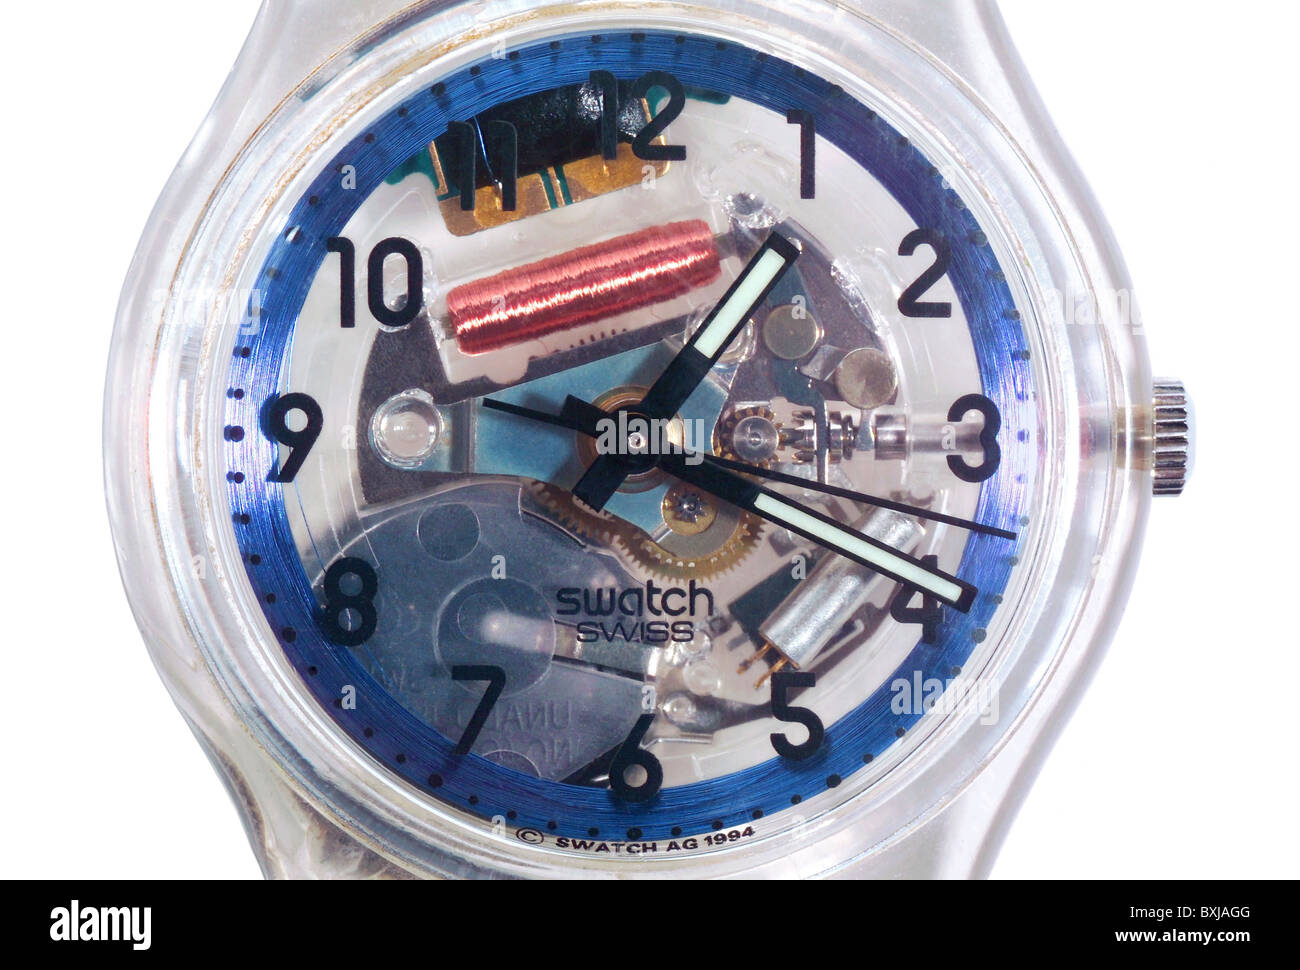 Uhr, Uhren, Armbanduhr, Swatch, Schweiz, 1994, 1990er Jahre, der 90er Jahre  des 20. Jahrhunderts, historisch, historische, Technik, Technik, Details  Stockfotografie - Alamy